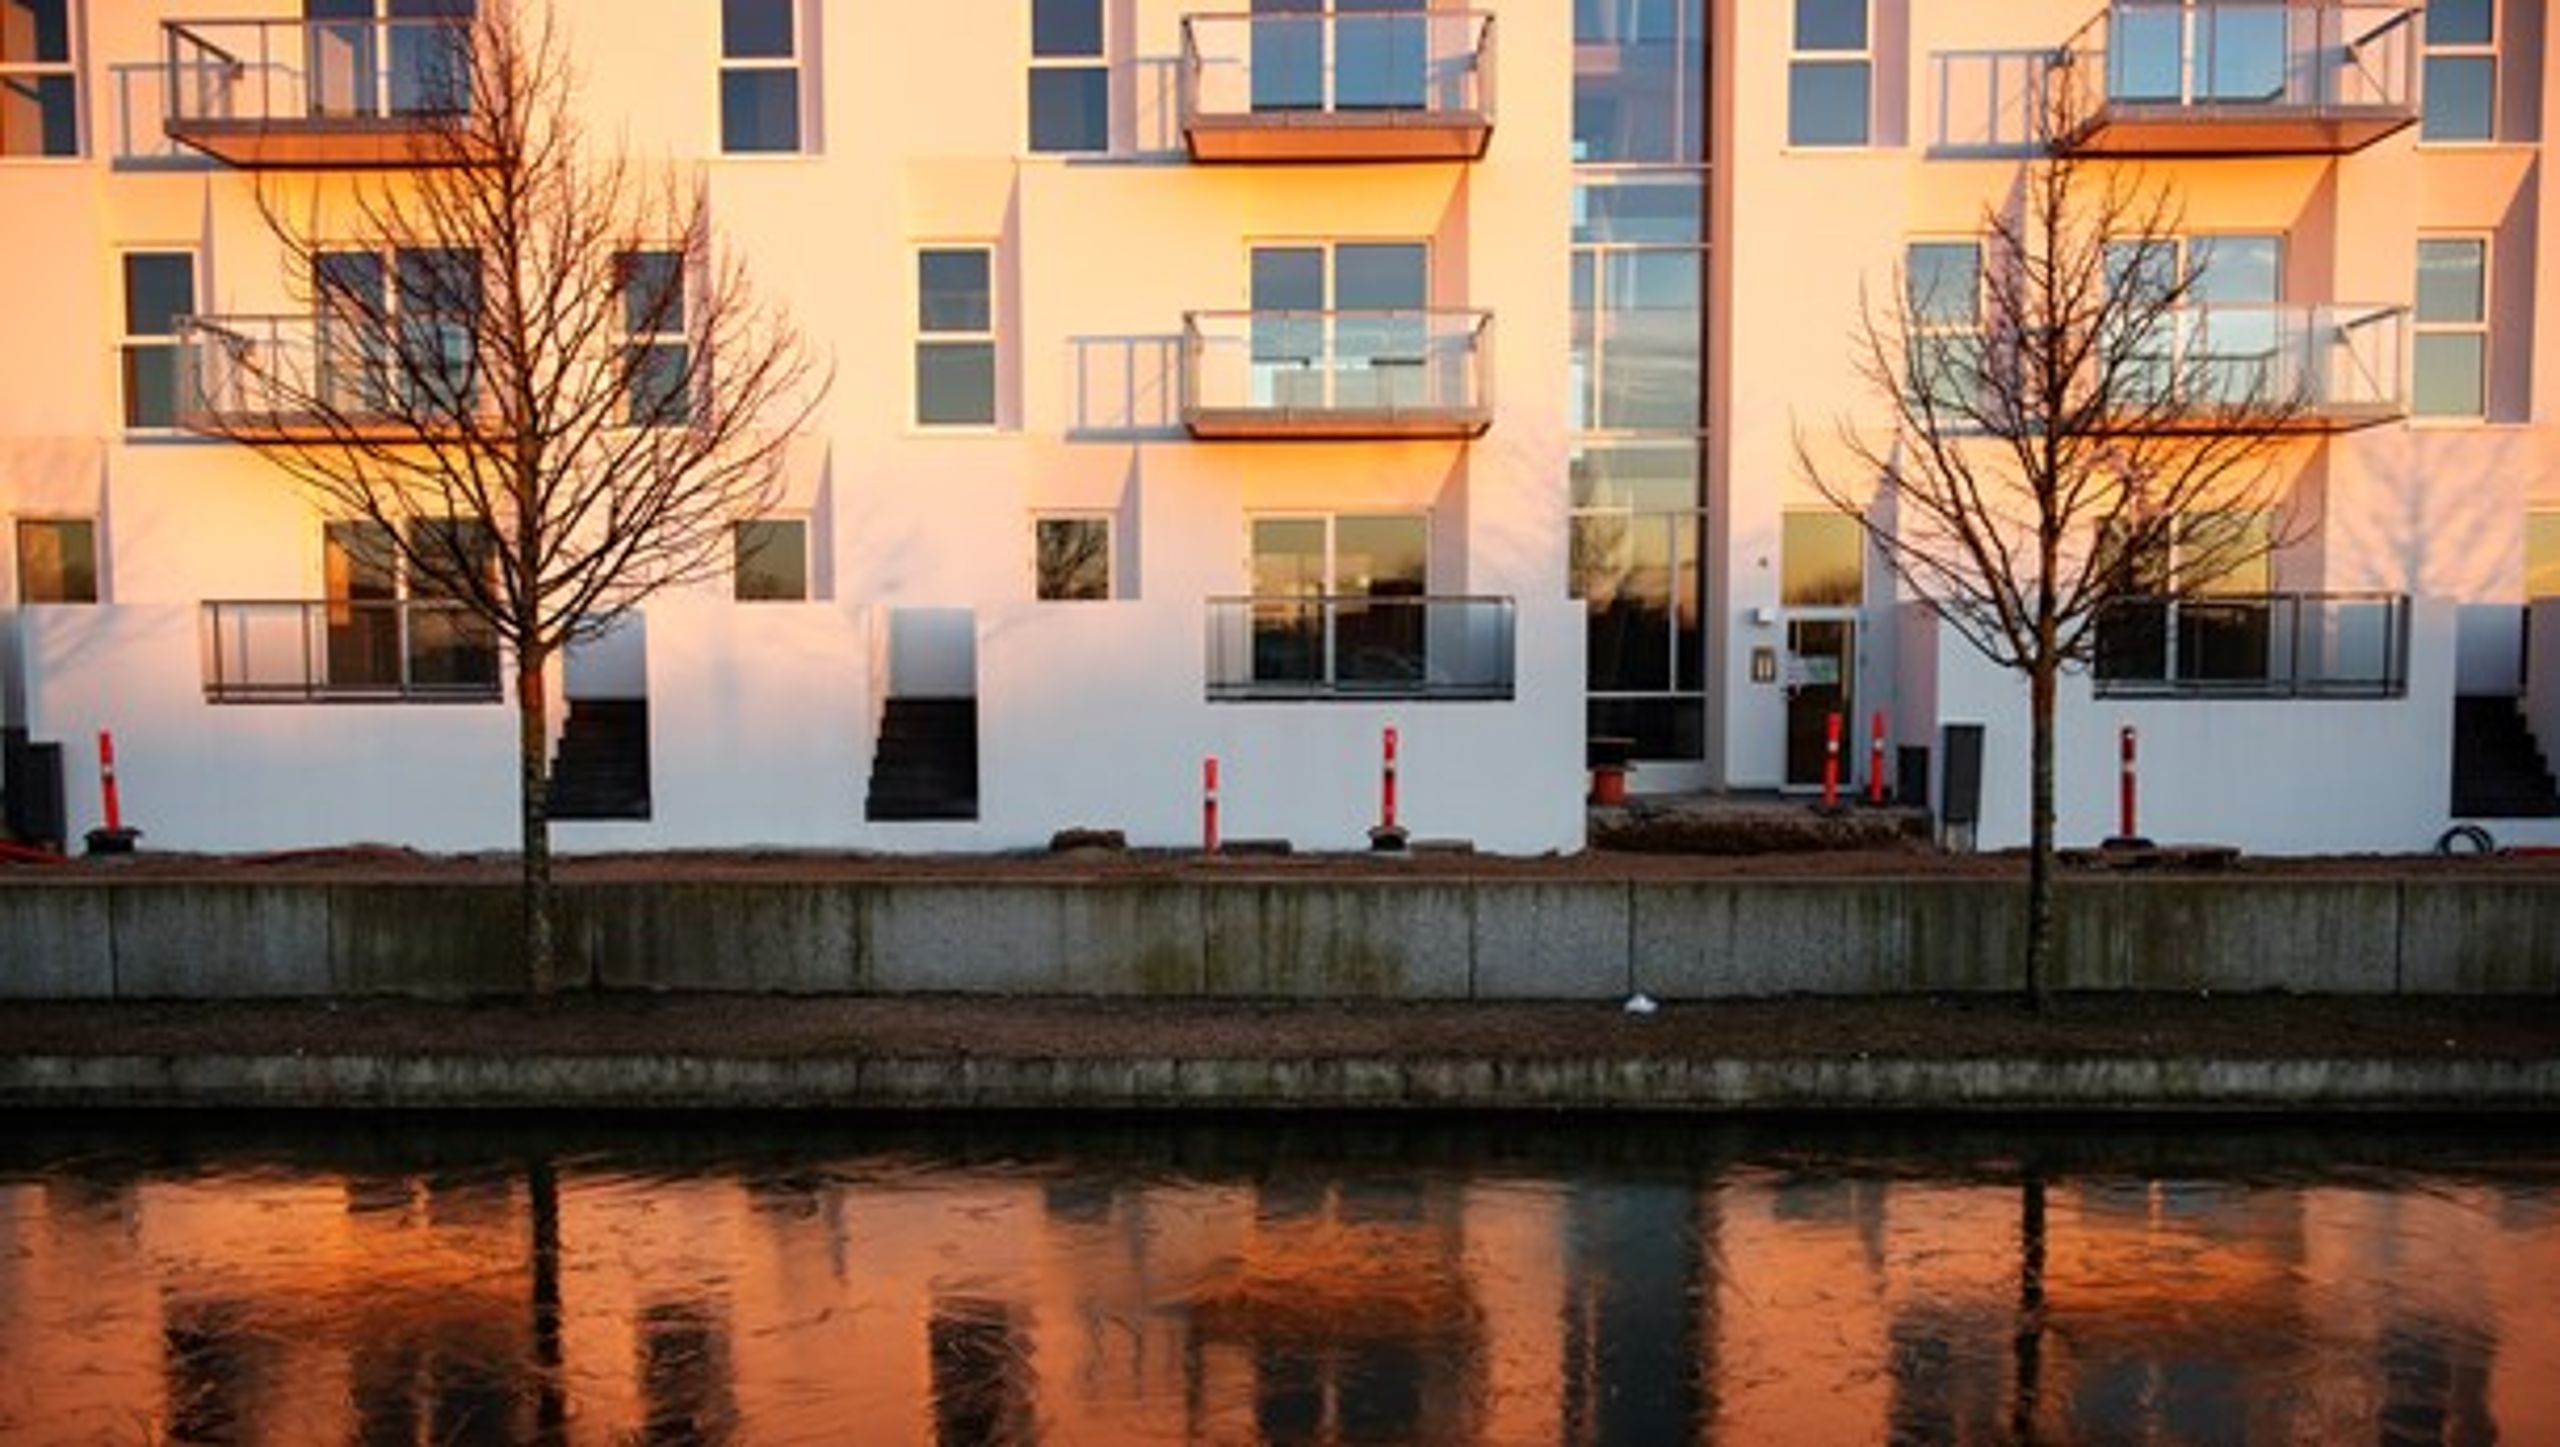 Der skal bygges flere almene boliger i Danmark, som disse på Amager, mener Søren Egge Rasmussen (EL).